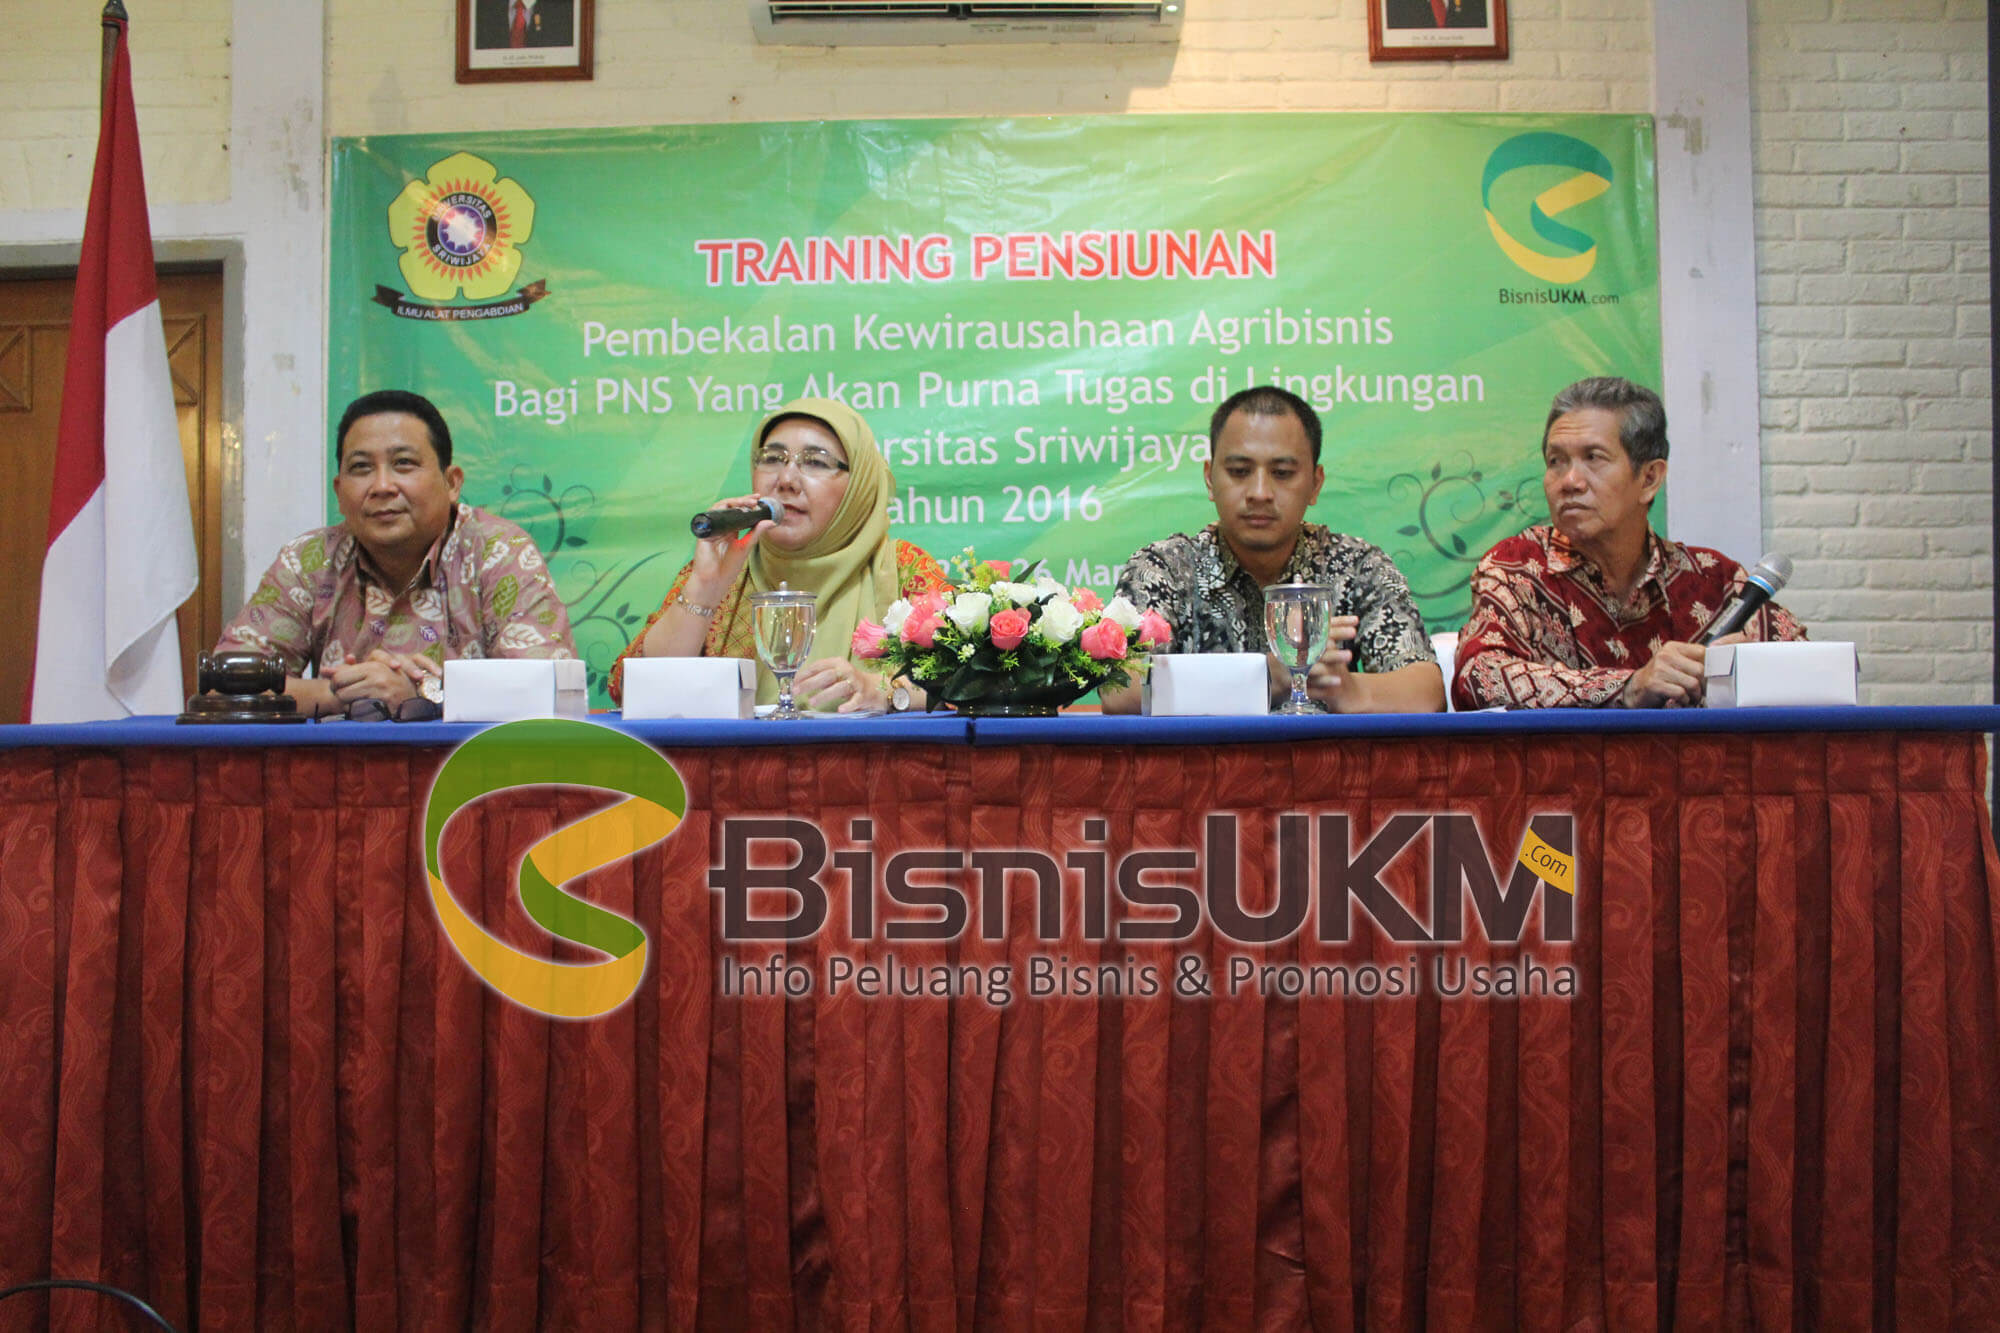 Acara penutupan training pensiunan Universitas Sriwijaya